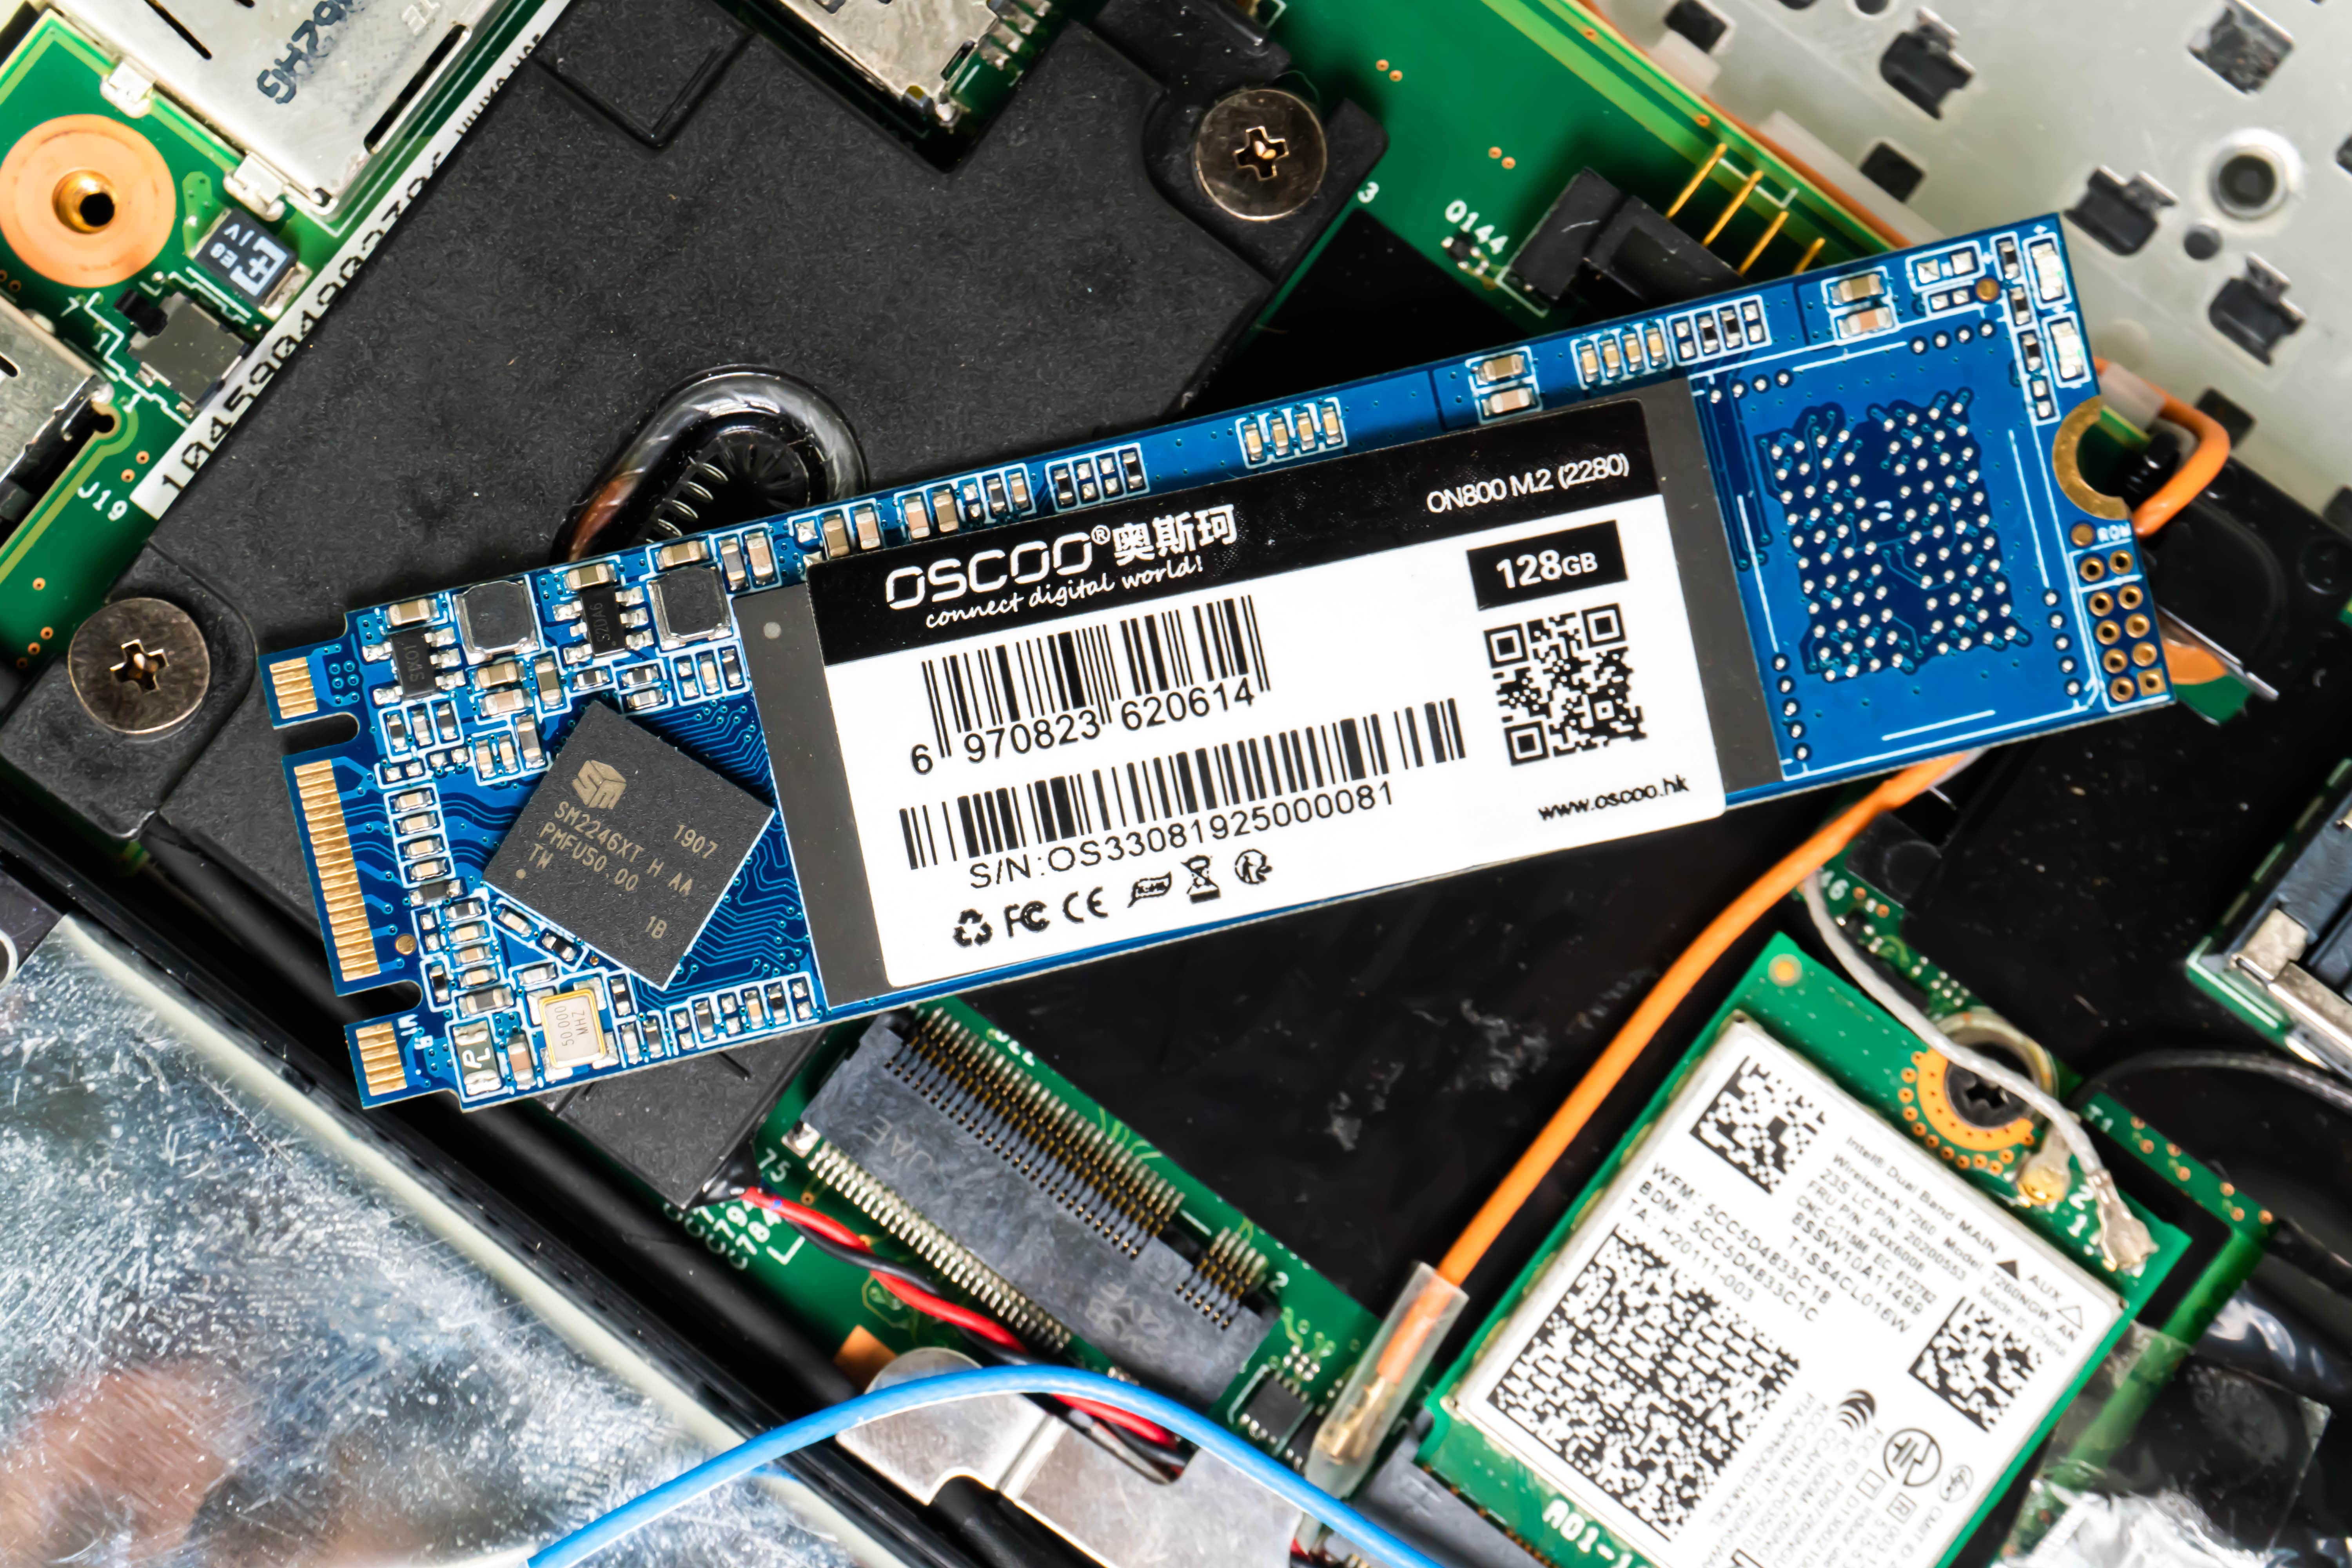 Ổ cứng SSD 128GB M.2 2280 Oscoo - Hàng Chính Hãng2